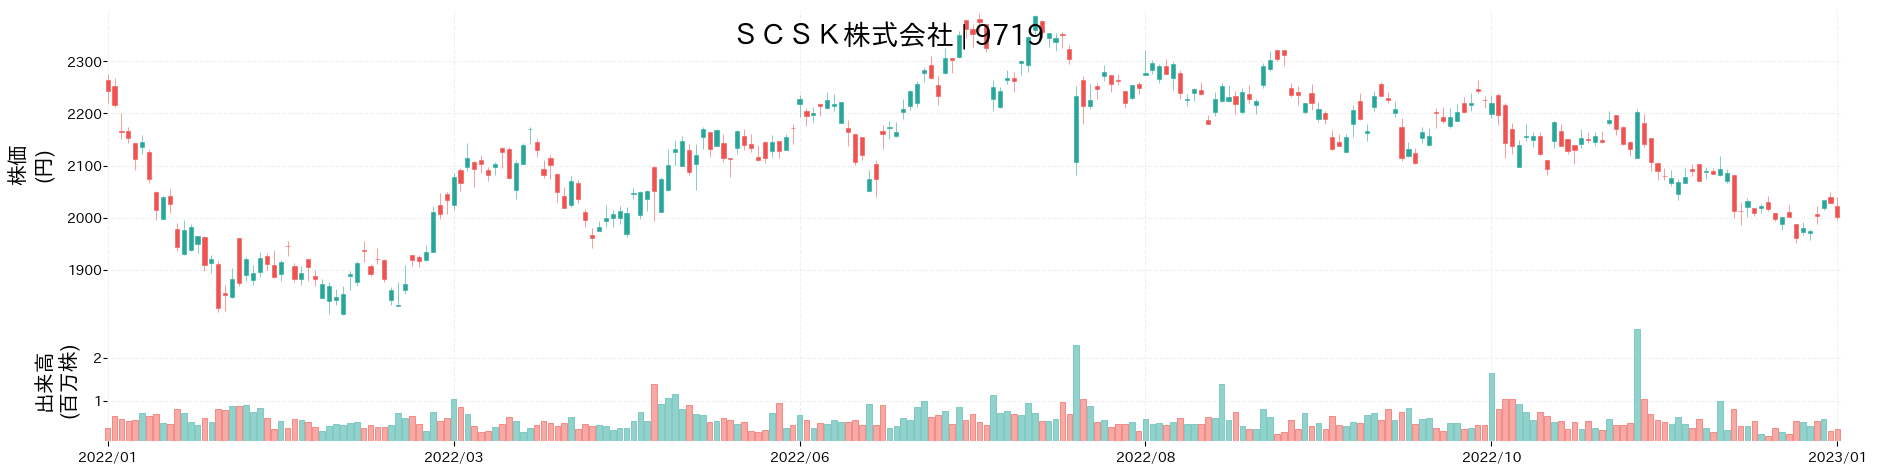 SCSKの株価推移(2022)